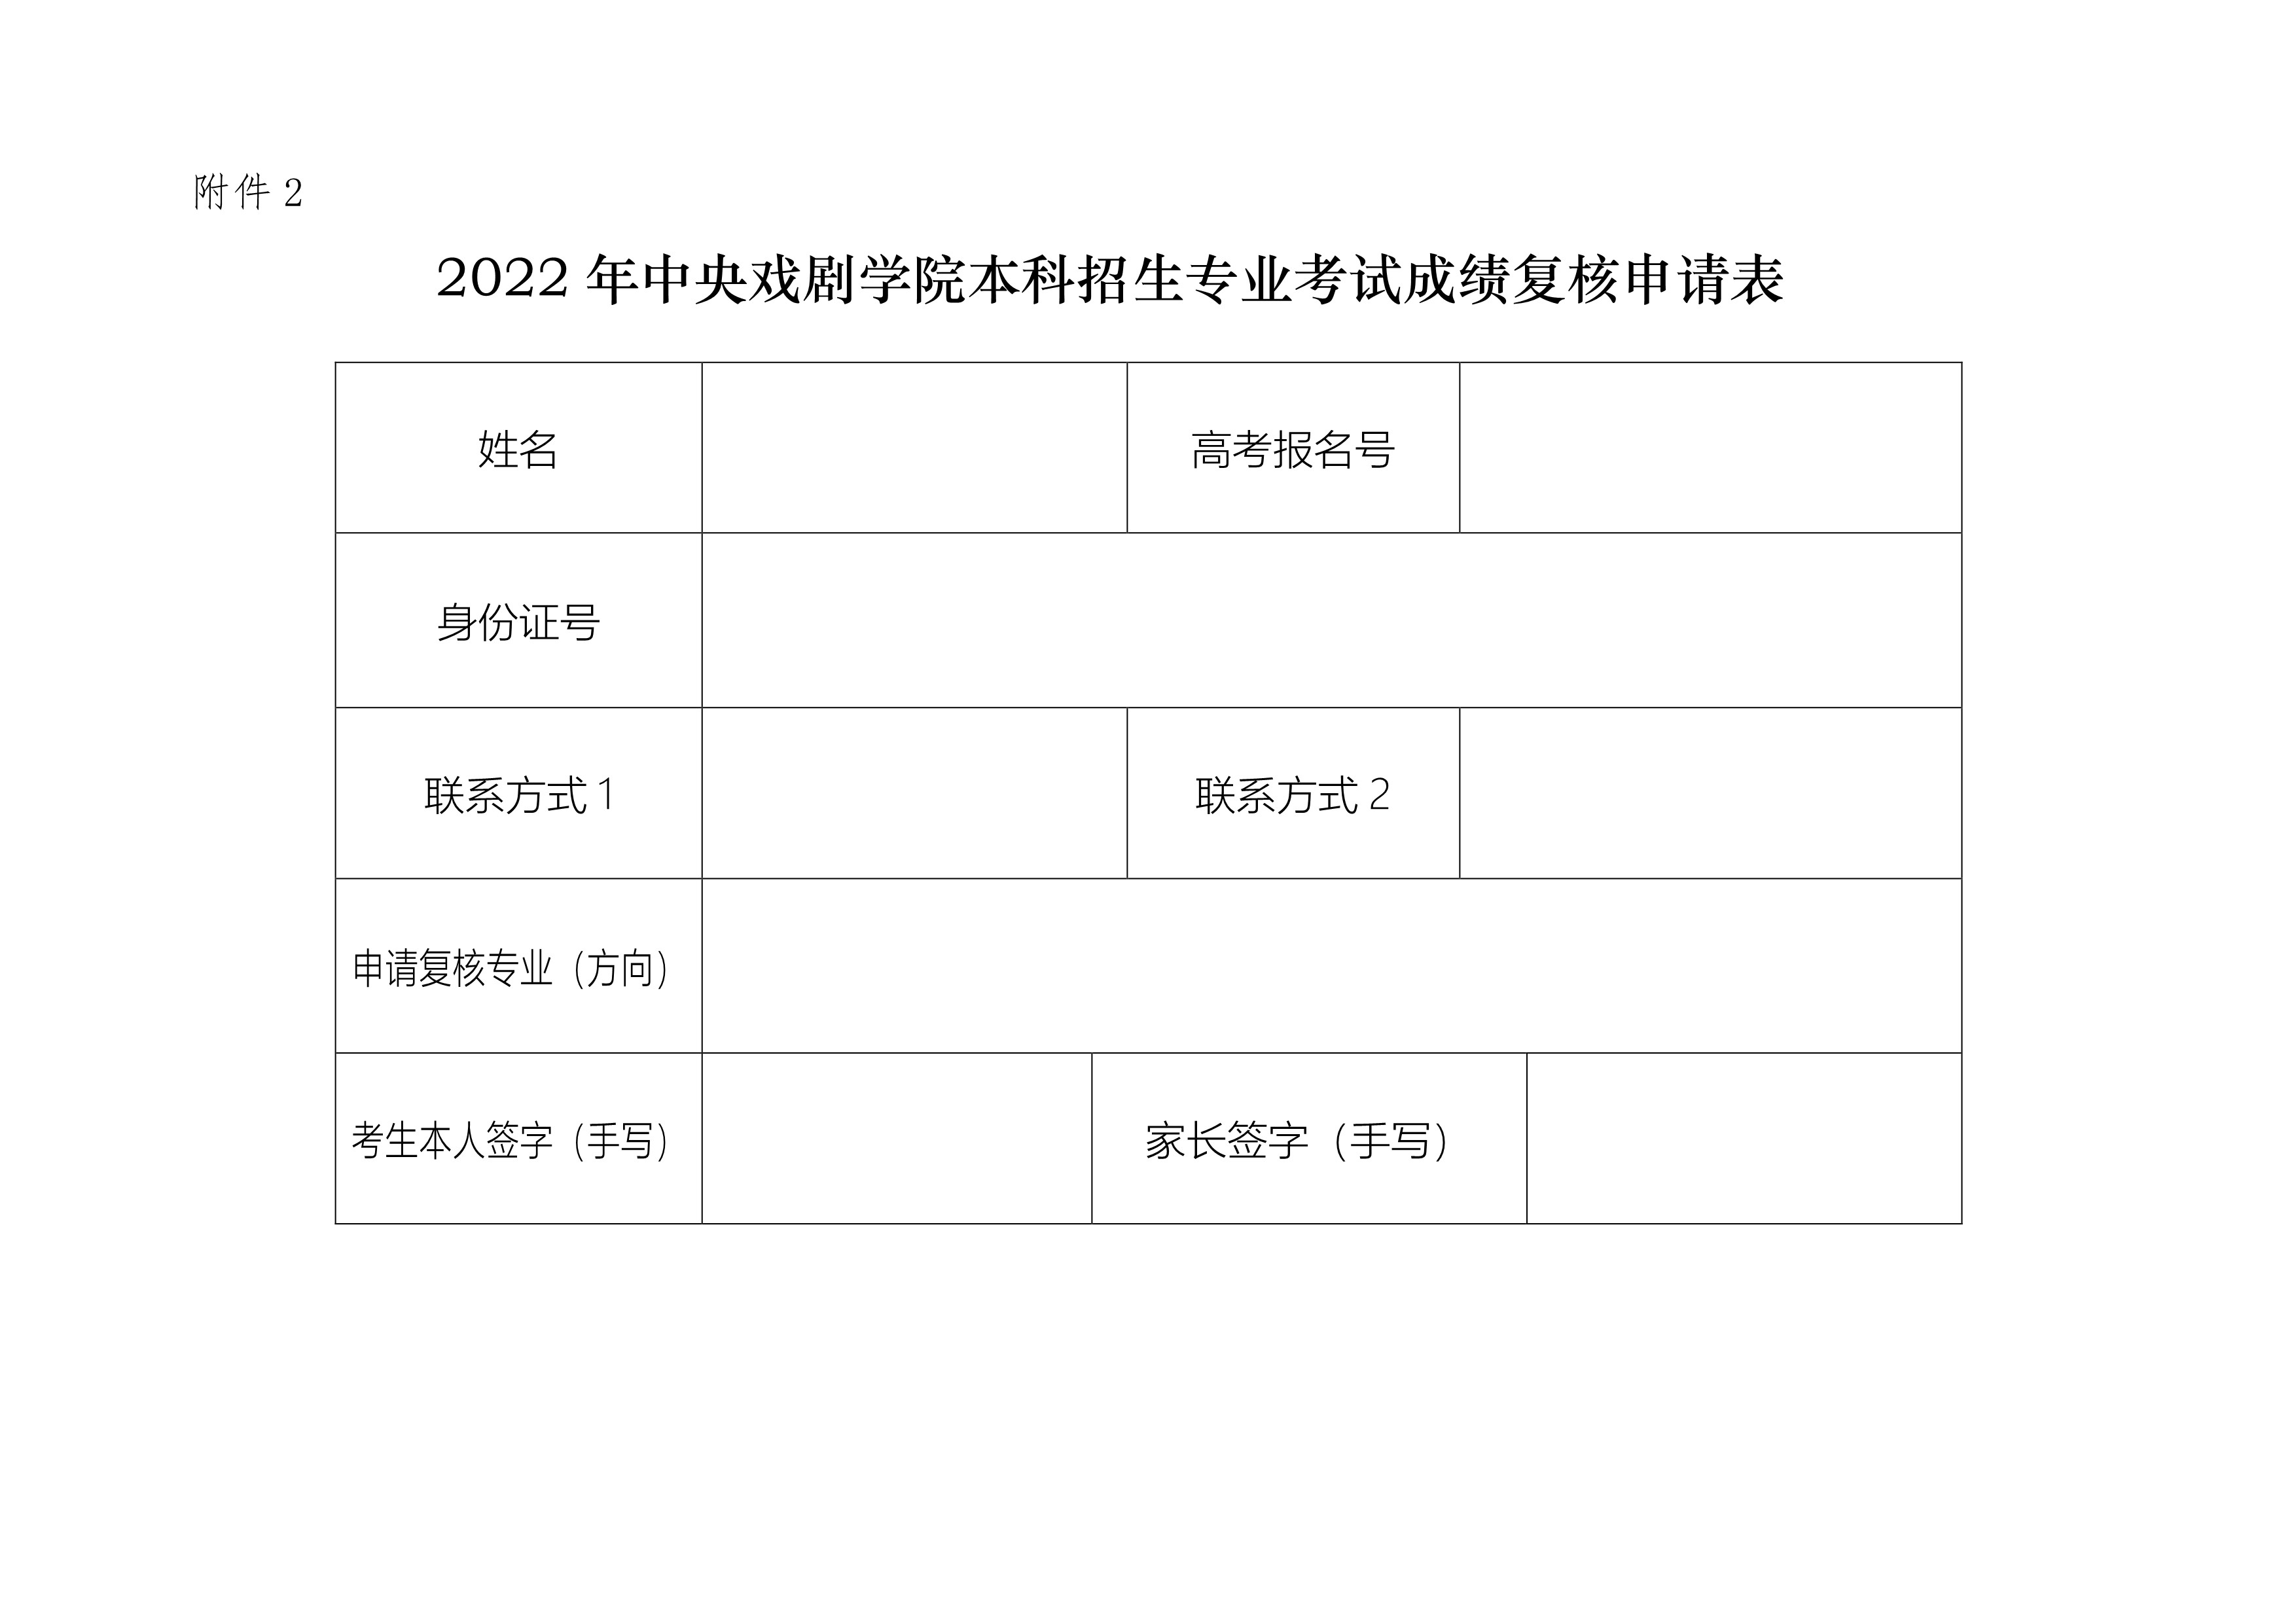 附件2：2022年专业考试成绩复核申请表_1.jpg